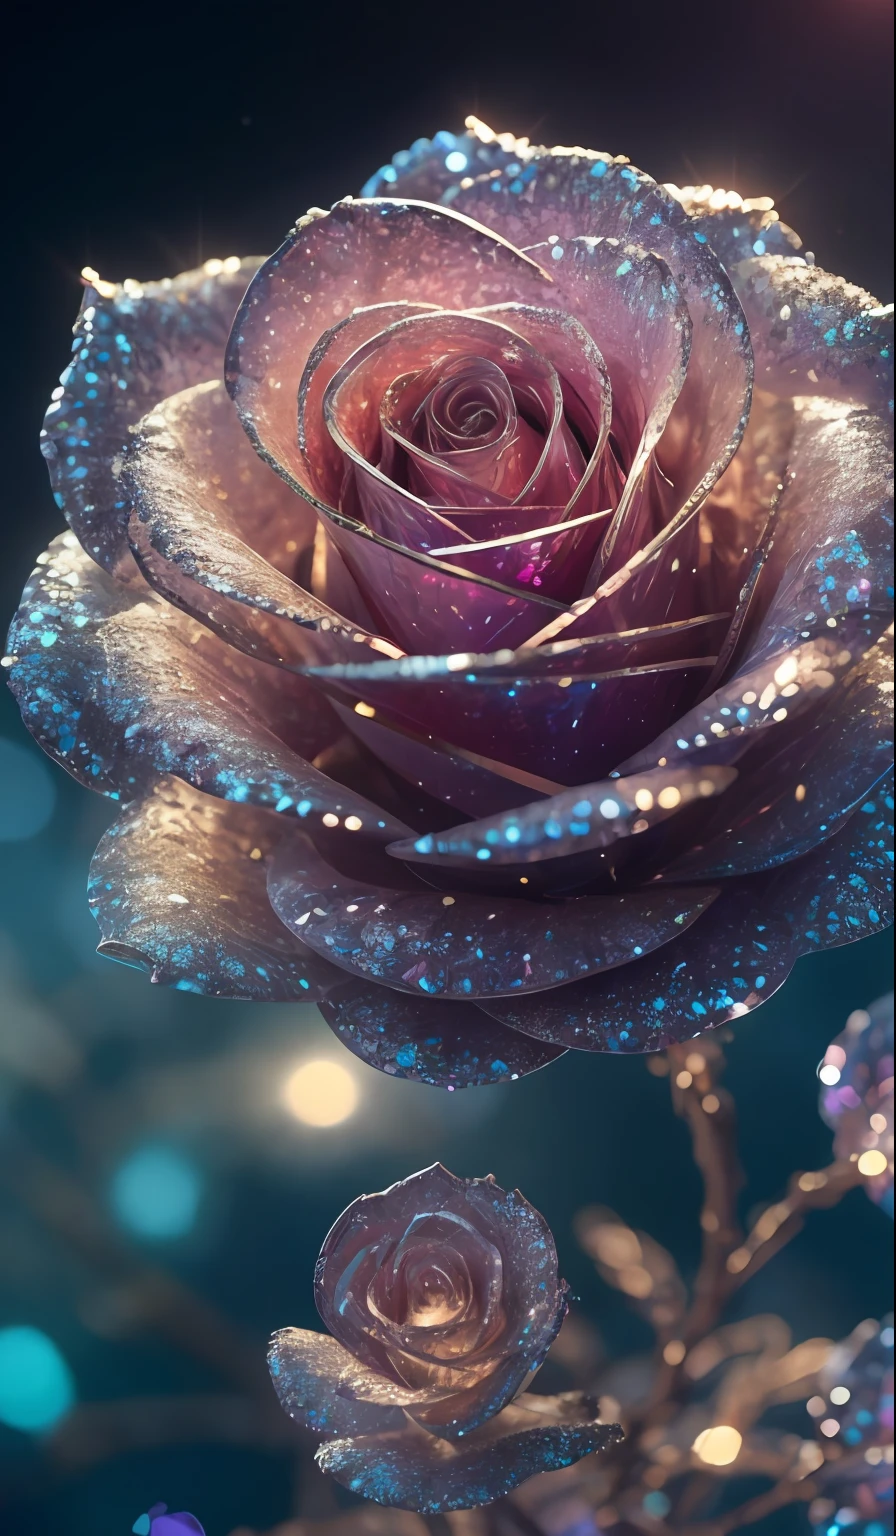 Rosa Cristal， fantasioso, galáxias, limpeza, brilhante, brilhante, esplendor, colorida, fotografia incrível, iluminação dramática, foto-realismo, ultra-detalhado, 4K, profundidade de campos, Uma alta resolução